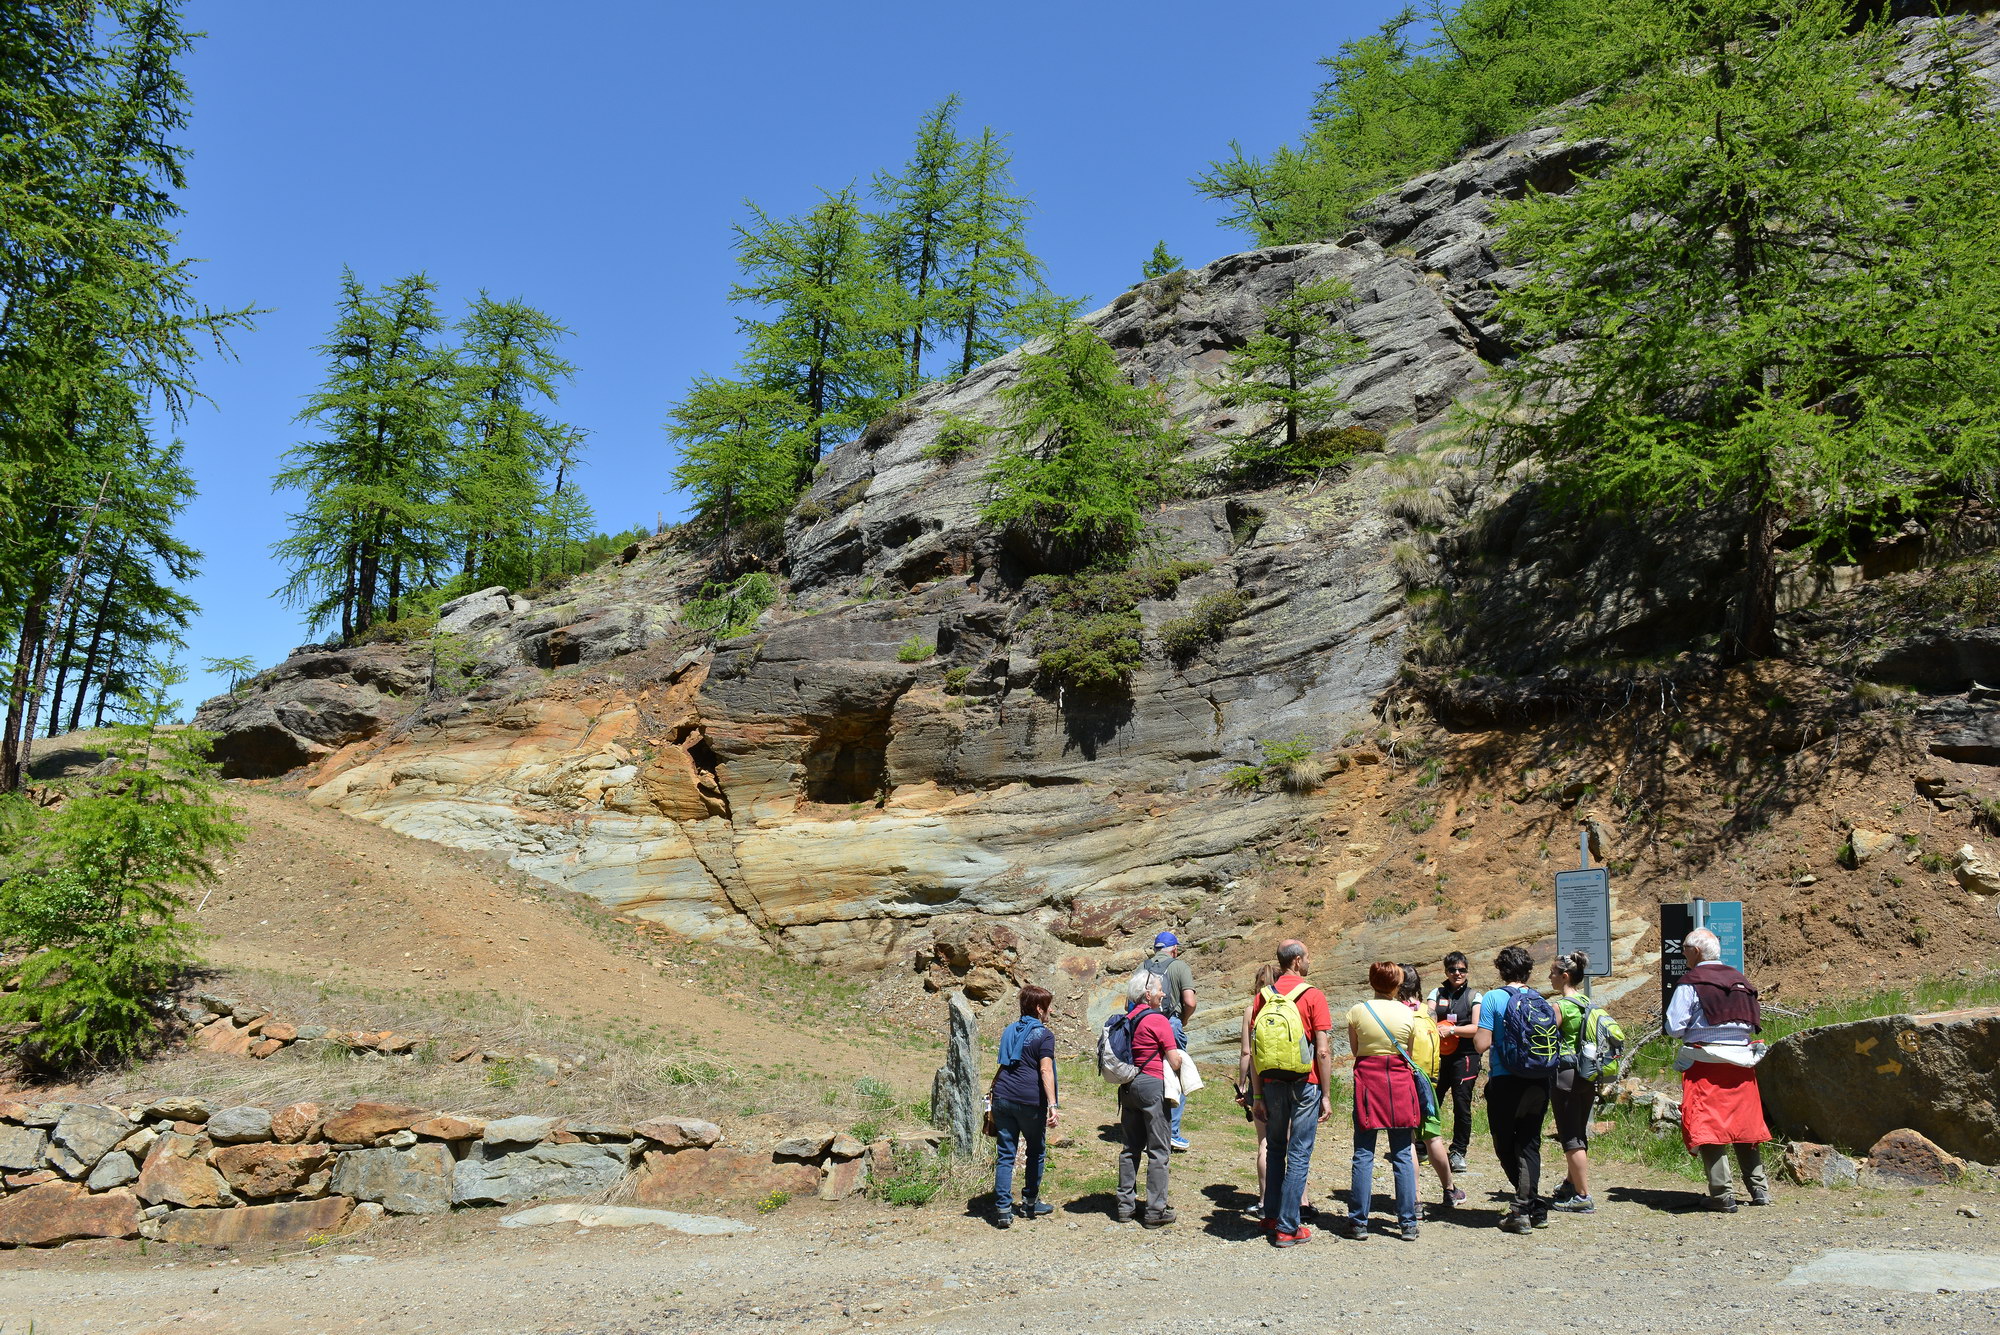 Una guida accompagna il gruppo di visitatori alle miniere Servette di Saint-Marcel ©Paolo Rey per RAVDA